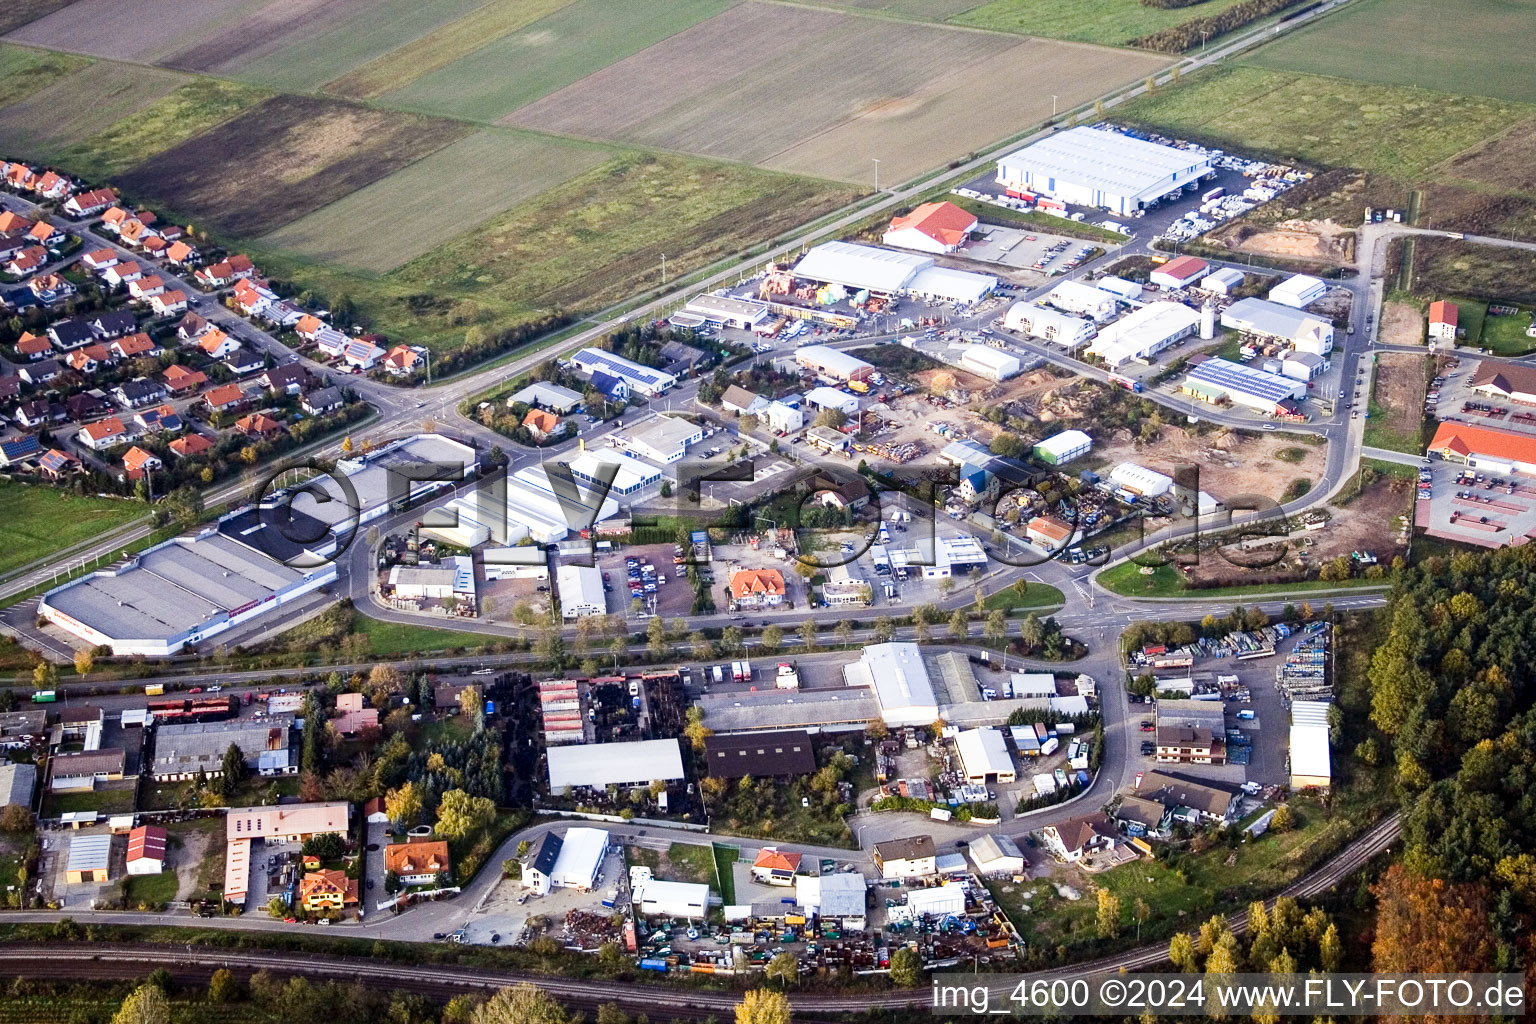 Vue aérienne de Zone commerciale et implantation d'entreprises à l'est à Bellheim dans le département Rhénanie-Palatinat, Allemagne